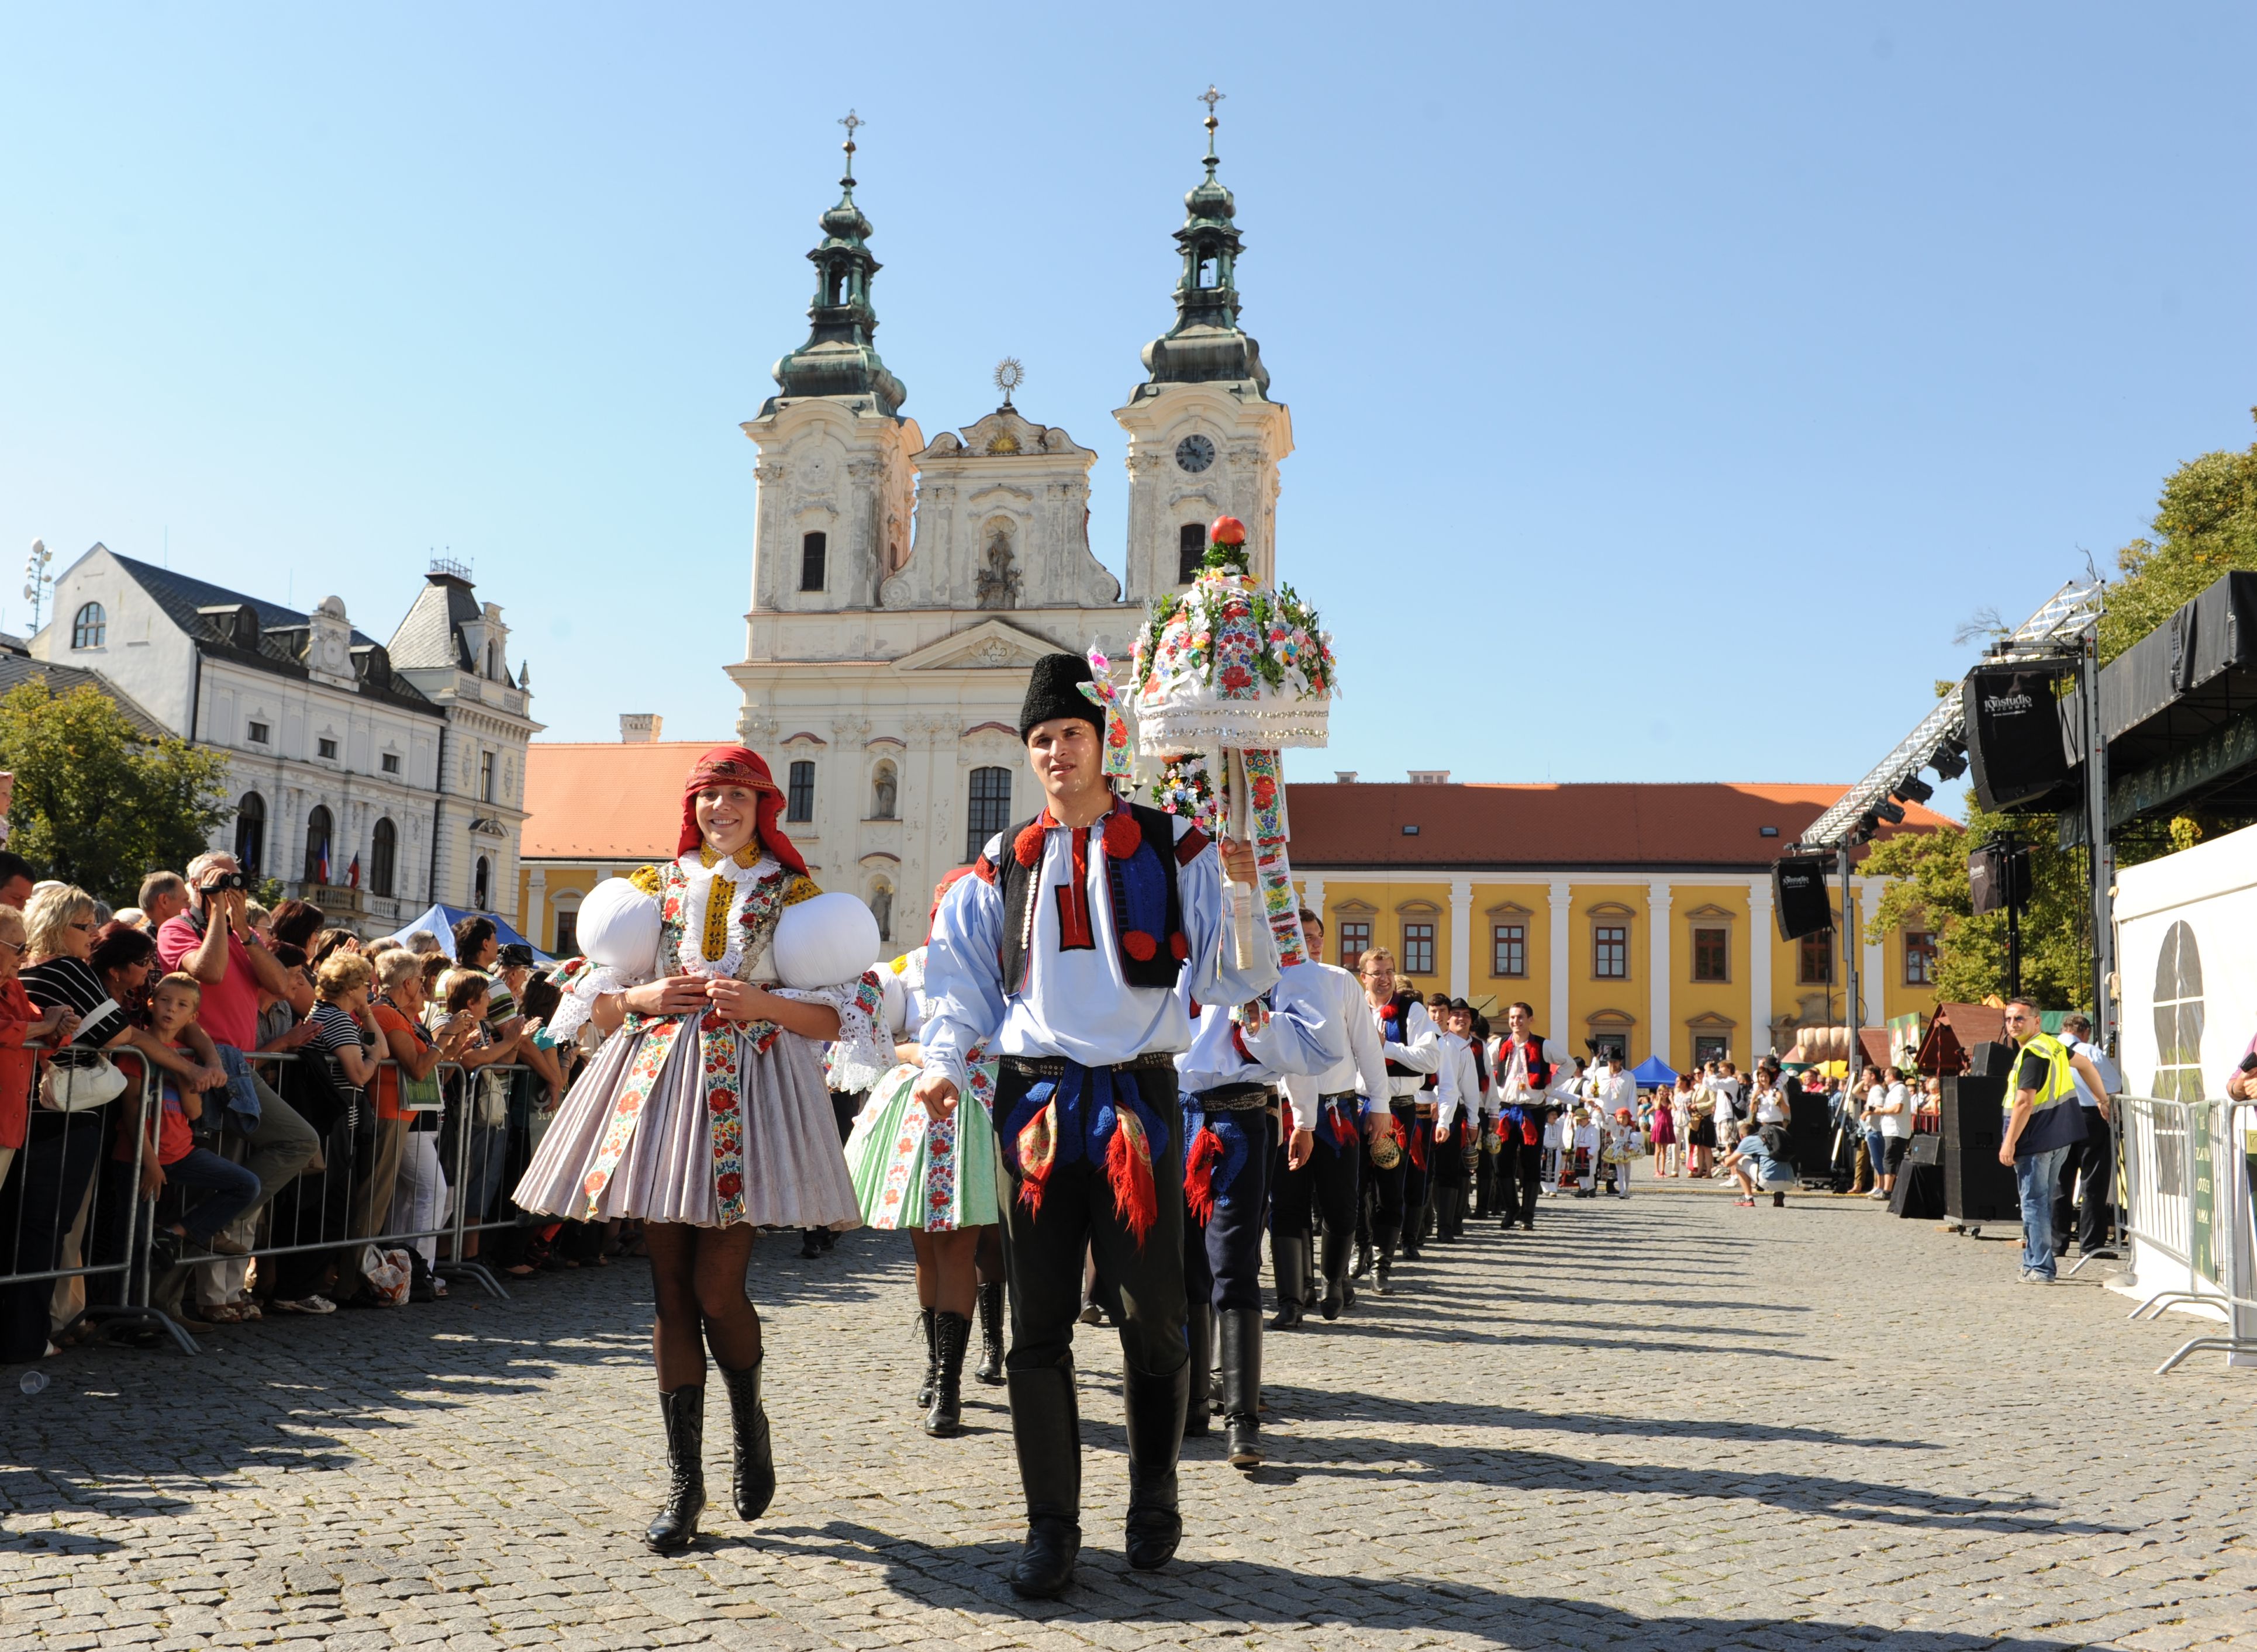 Slovácké slavnosti vína a otevřených památek v Uherském Hradišti